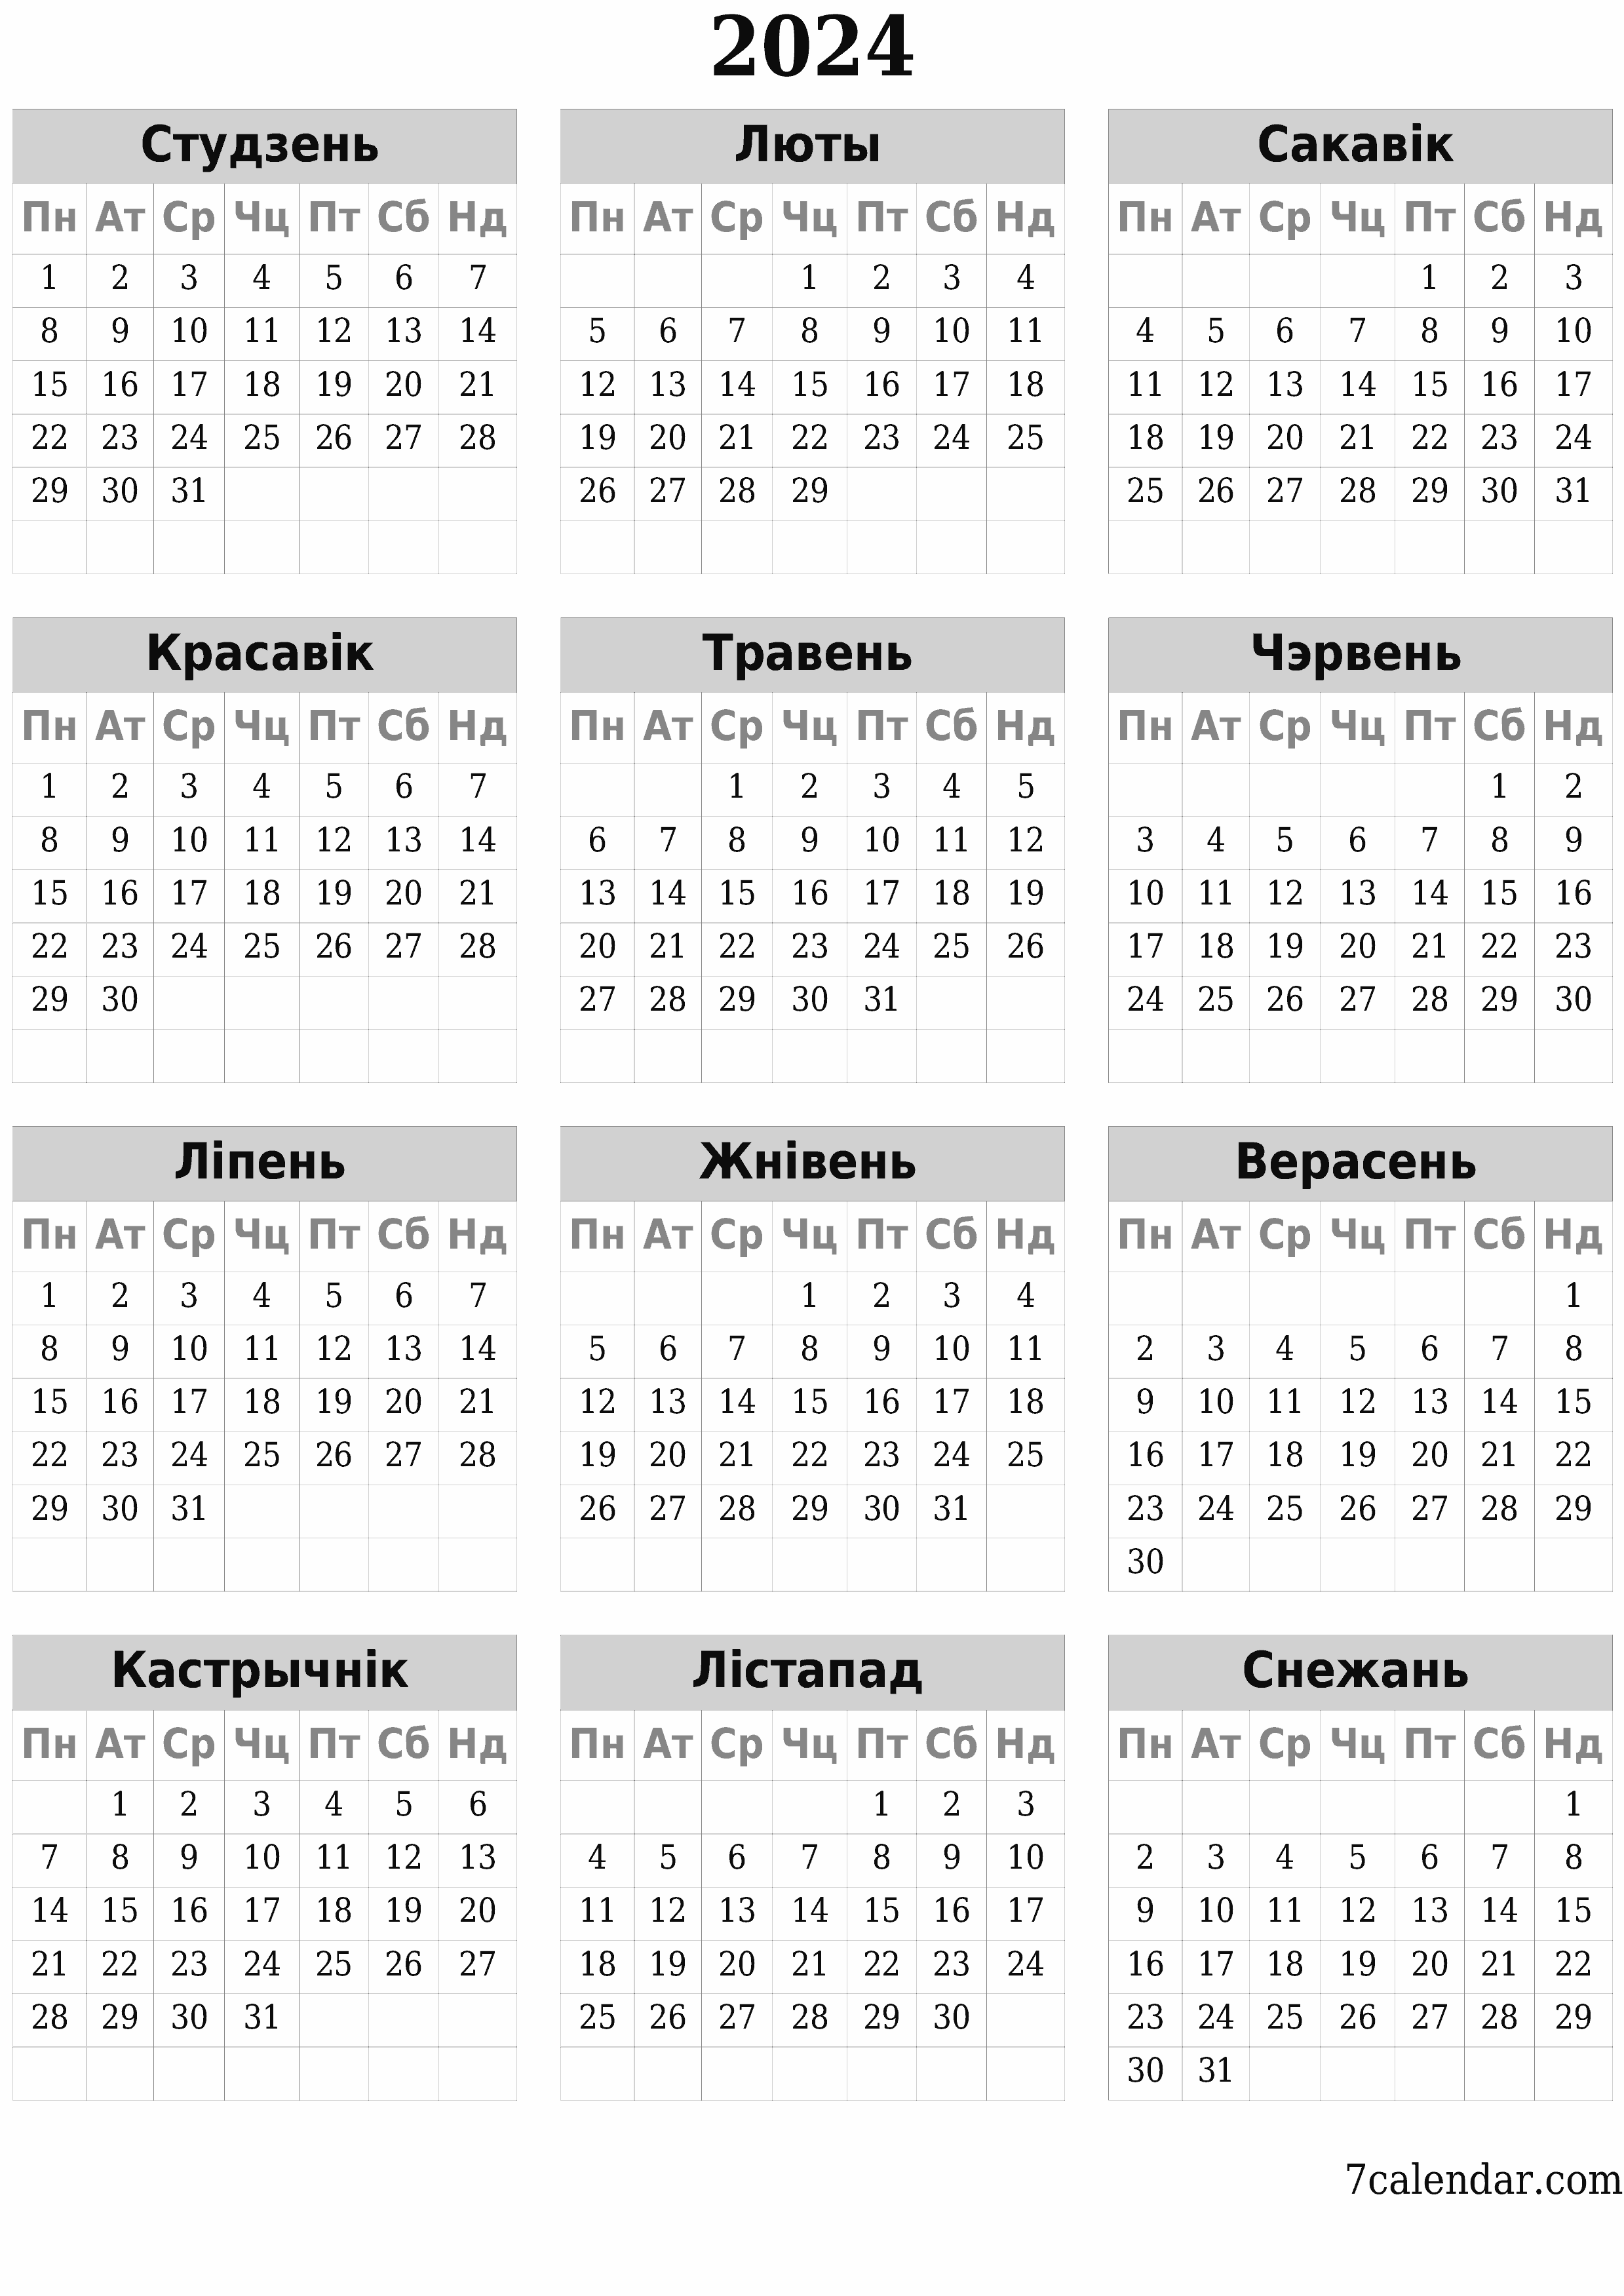  для друку насценны шаблон календара бясплатны вертыкальны Штогадовы каляндар Снежань (Снеж) 2024